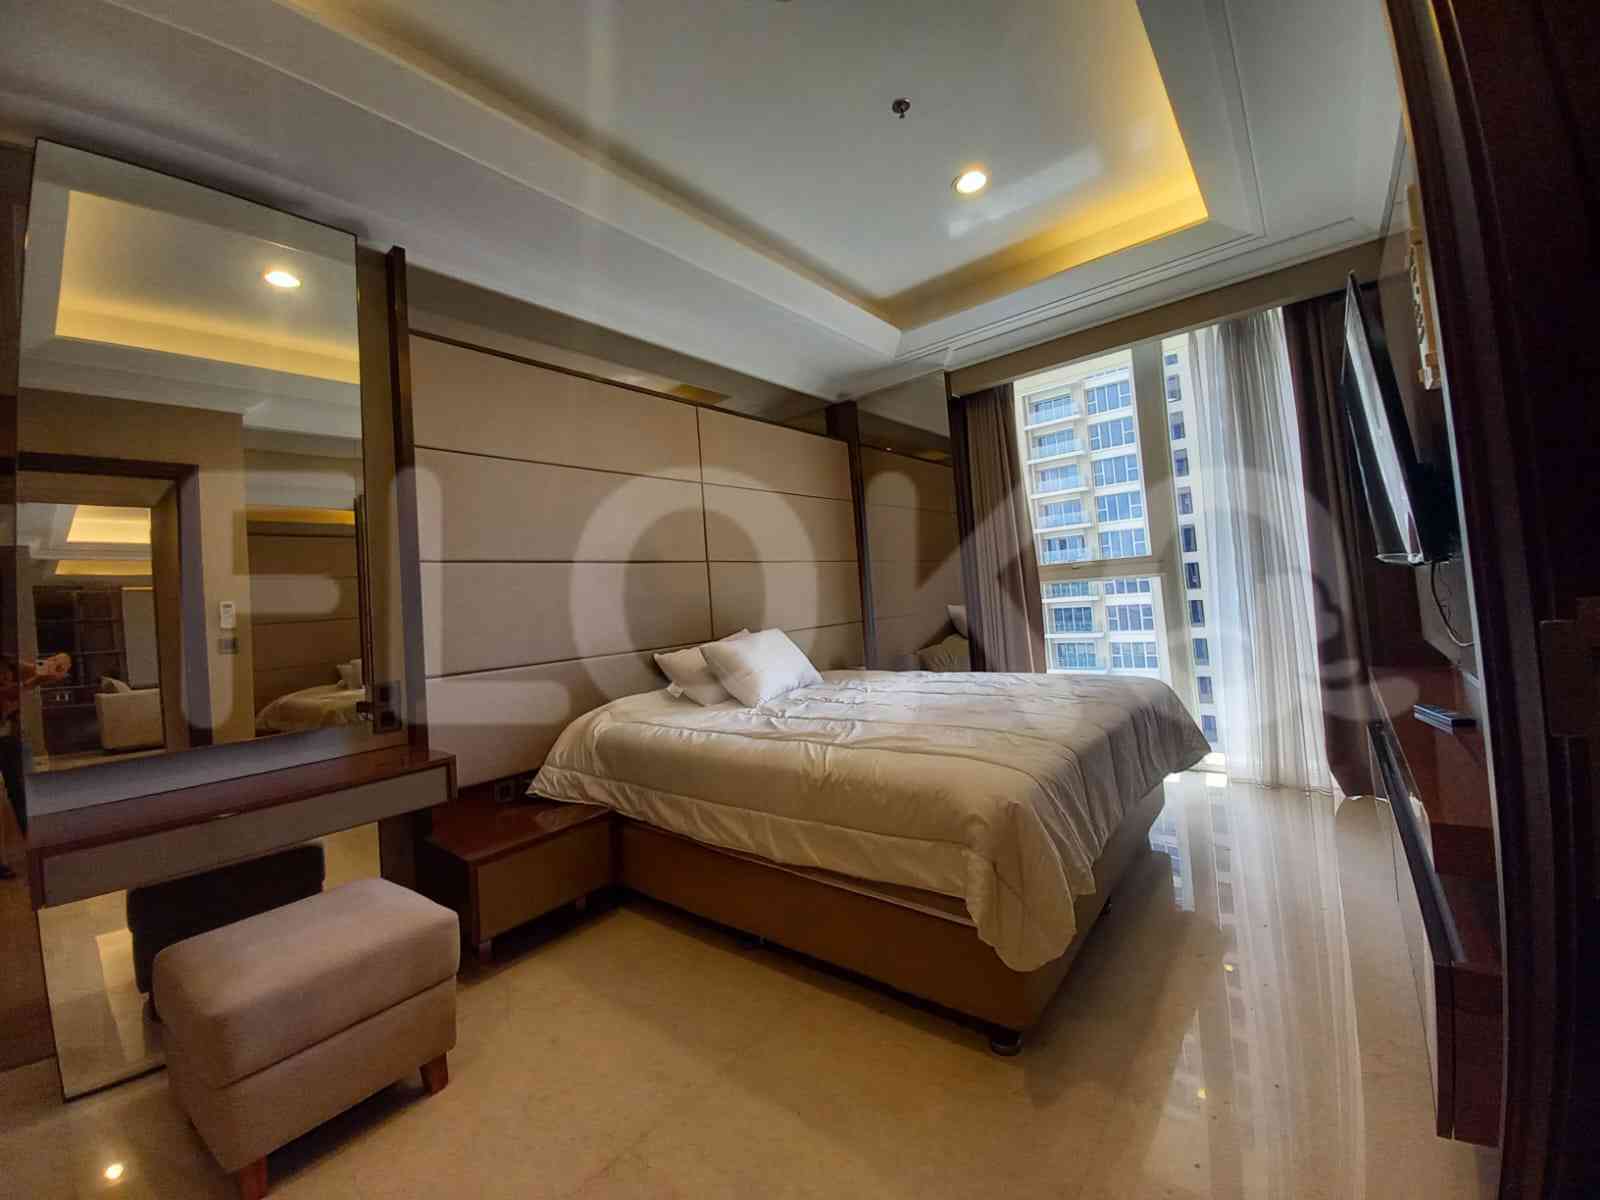 3 Bedroom on 8th Floor for Rent in Pondok Indah Residence - fpo70b 3